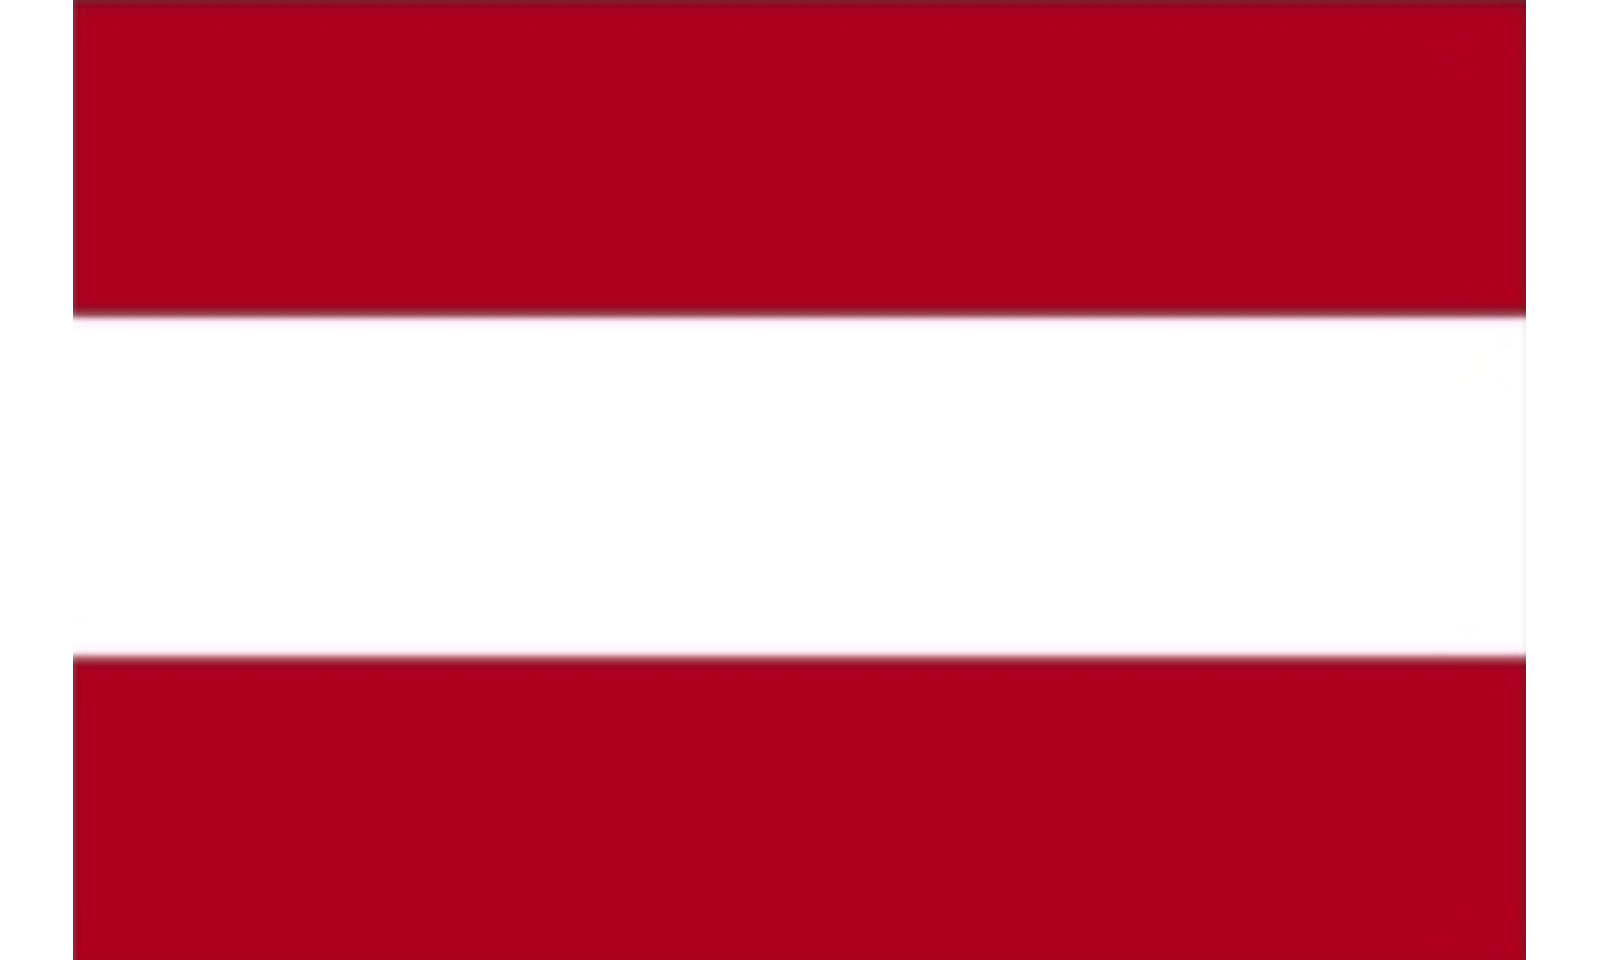 austriaflag